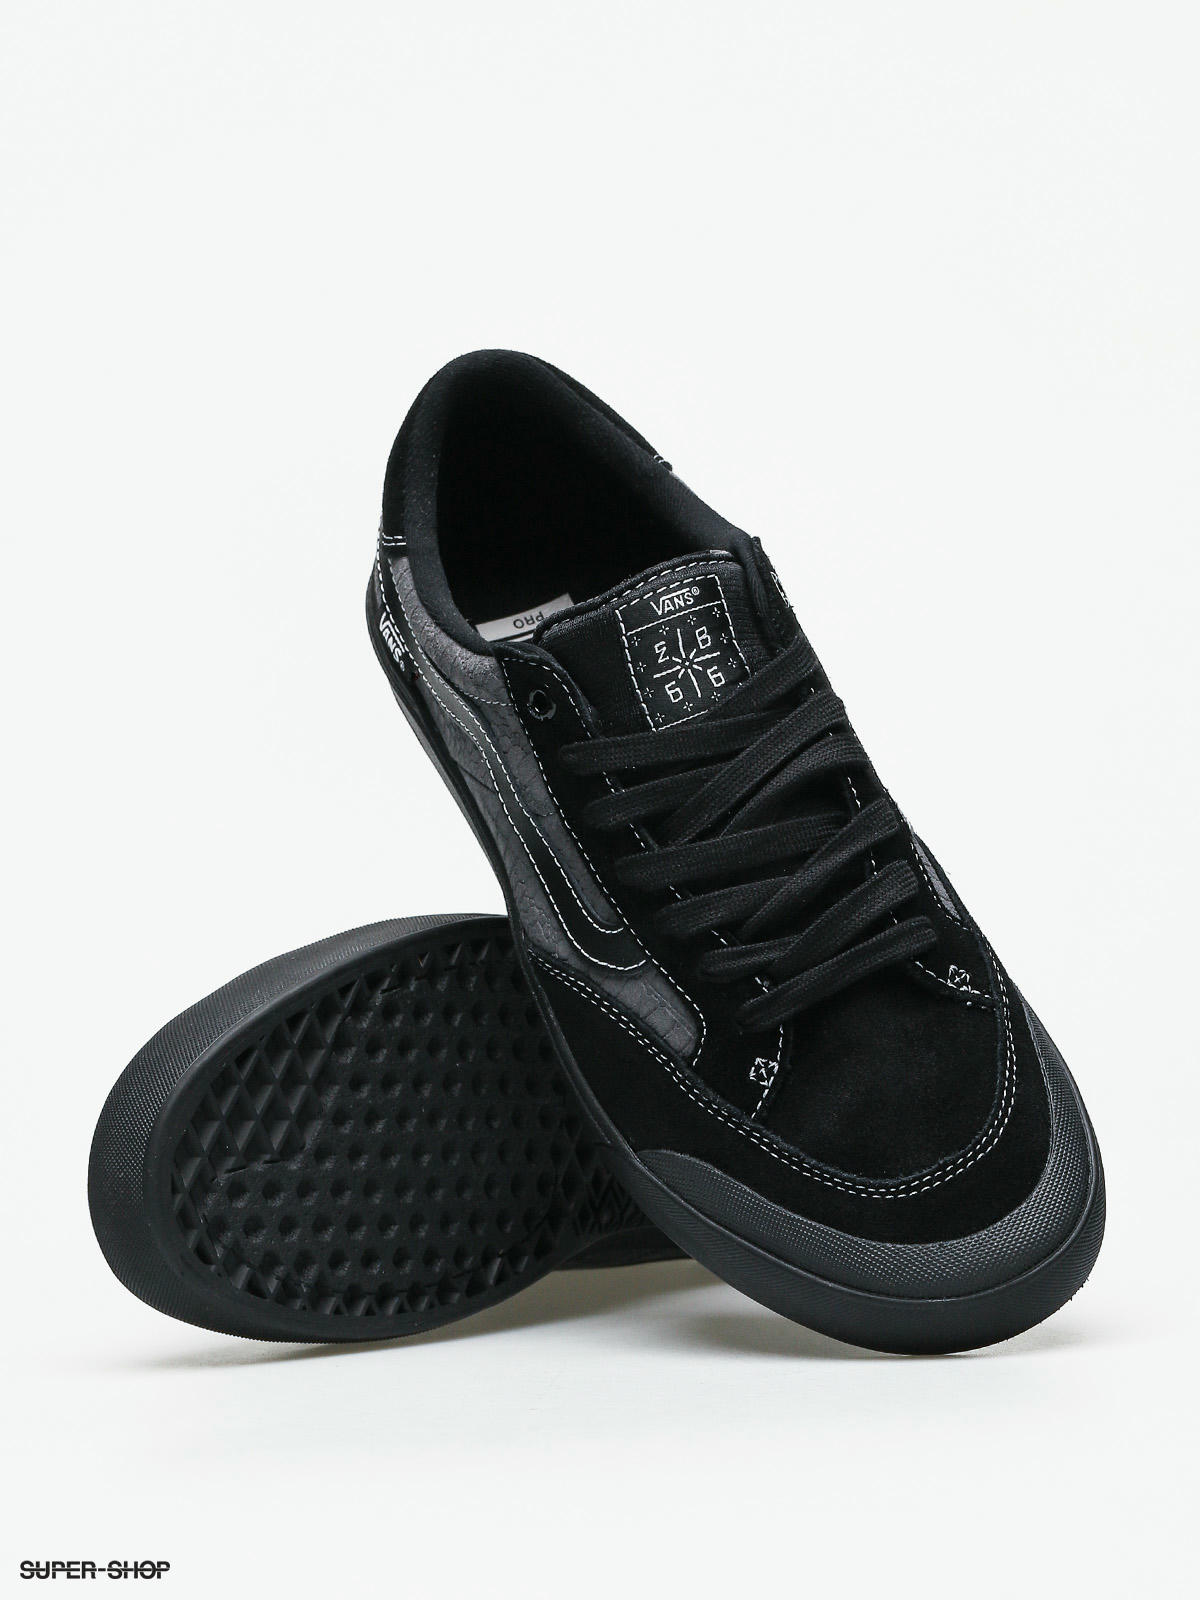 Vans Berle Pro Shoes (croc/black/pewter)